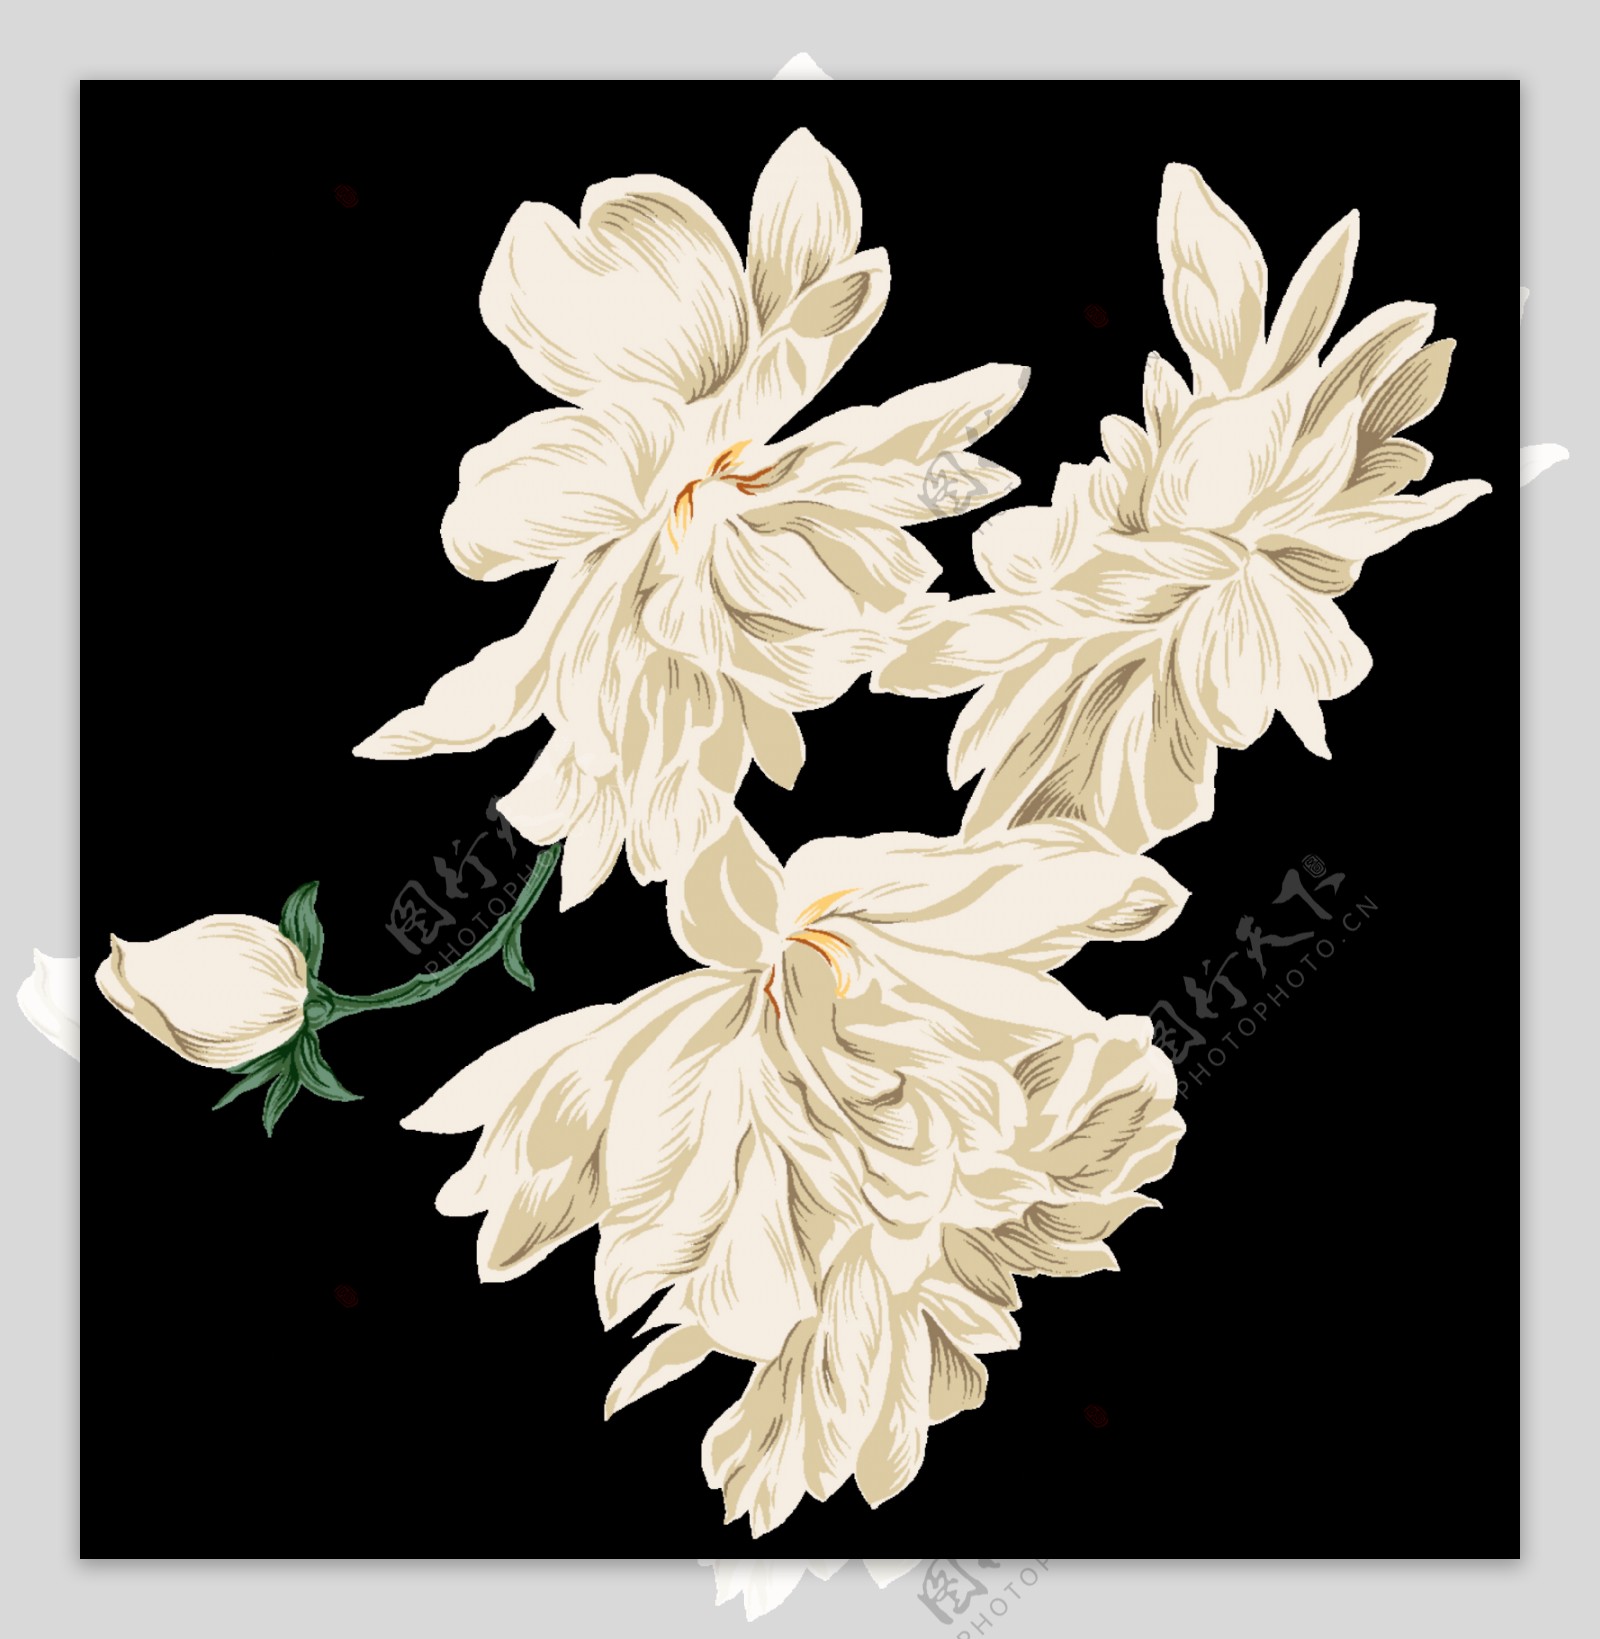 中国风古典白色花朵装饰元素